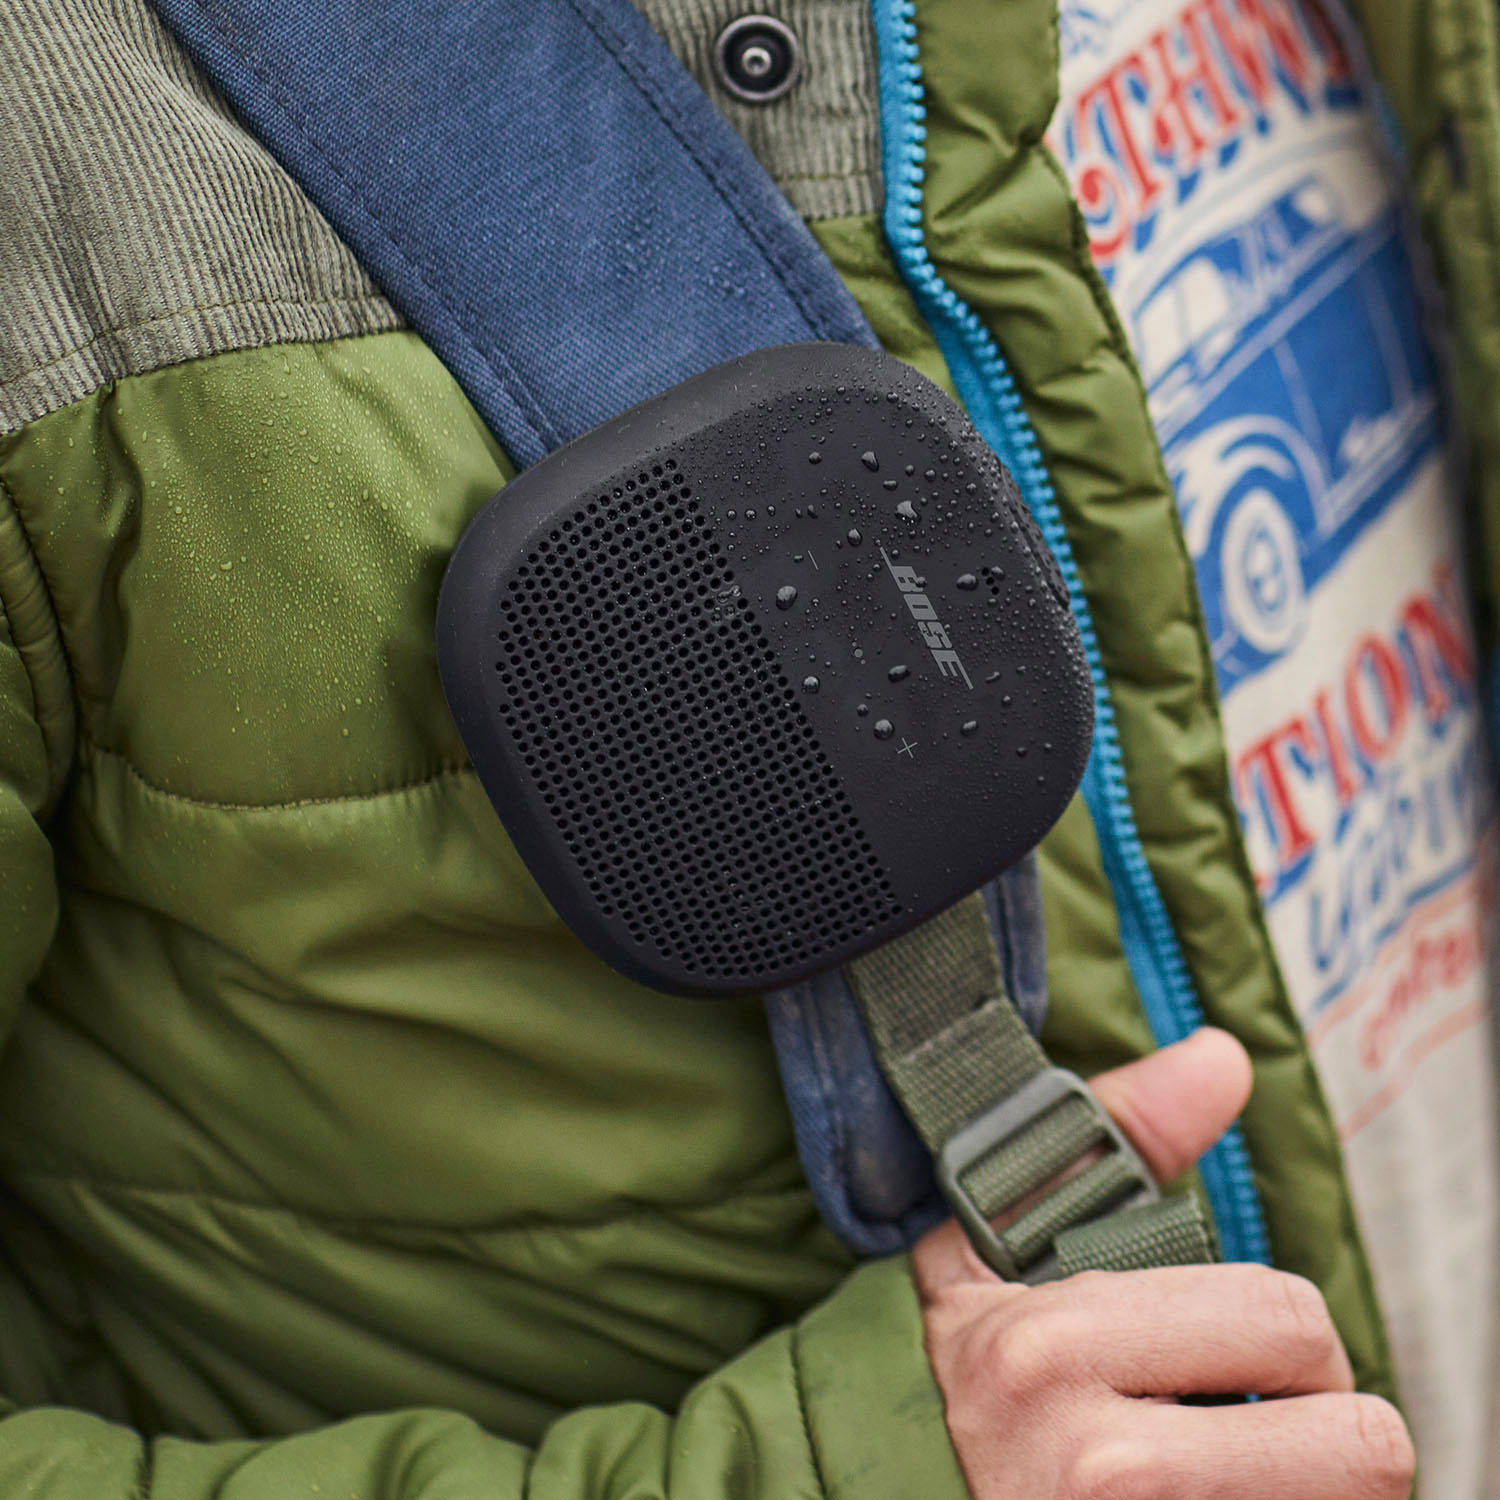 Bose SoundLink Micro Portable Bluetooth Speaker with Waterproof Design  Black 783342-0100 - Best Buy